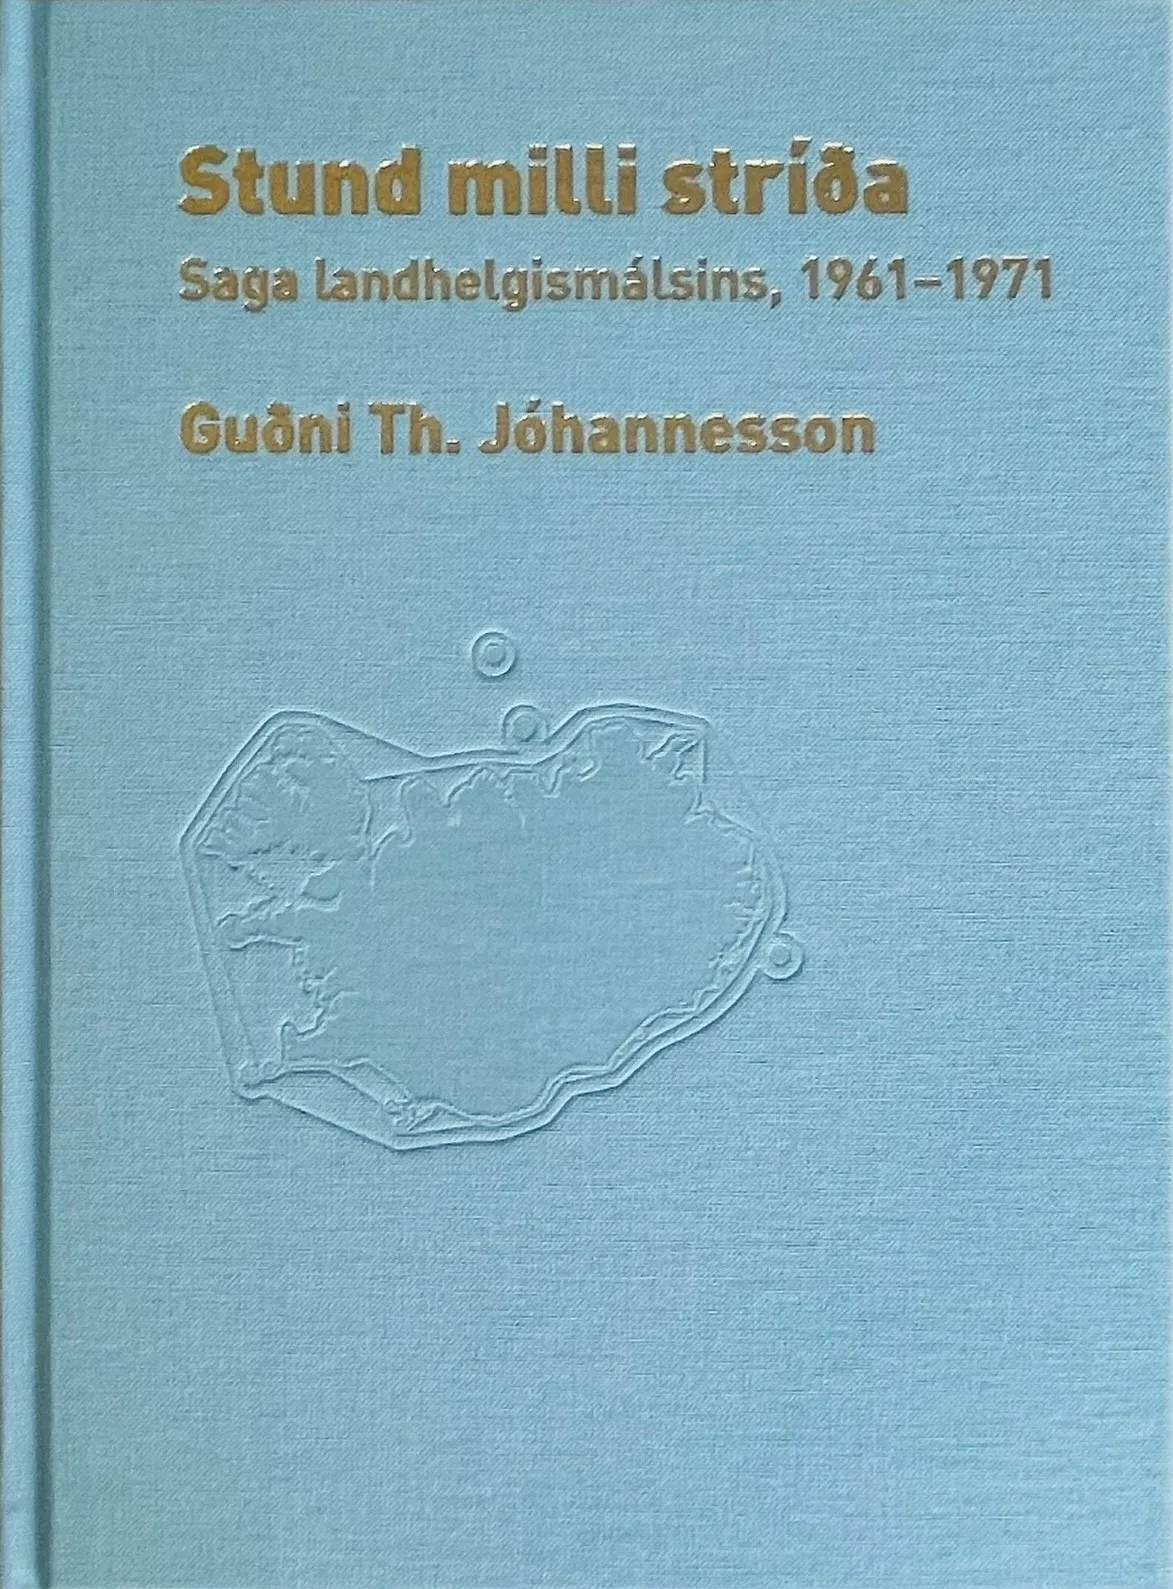 Bókakápa: Stund milli stríða Saga landhelgismálsins, 1961-1971